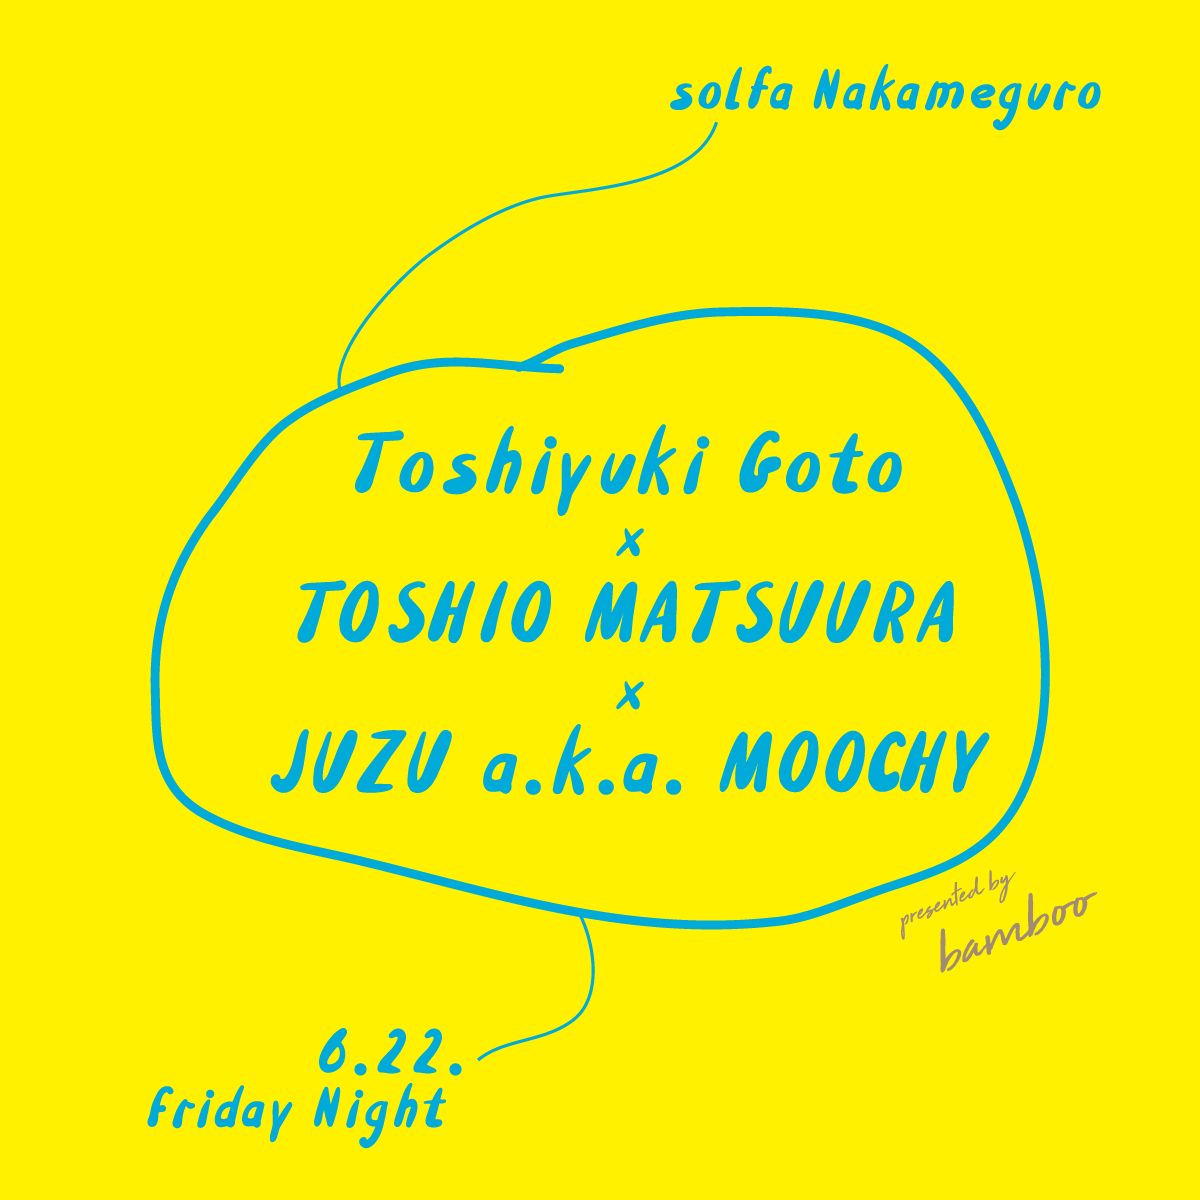 Toshiyuki Goto × TOSHIO MATSUURA × JUZU a.k.a. MOOCHY supported by bamboo